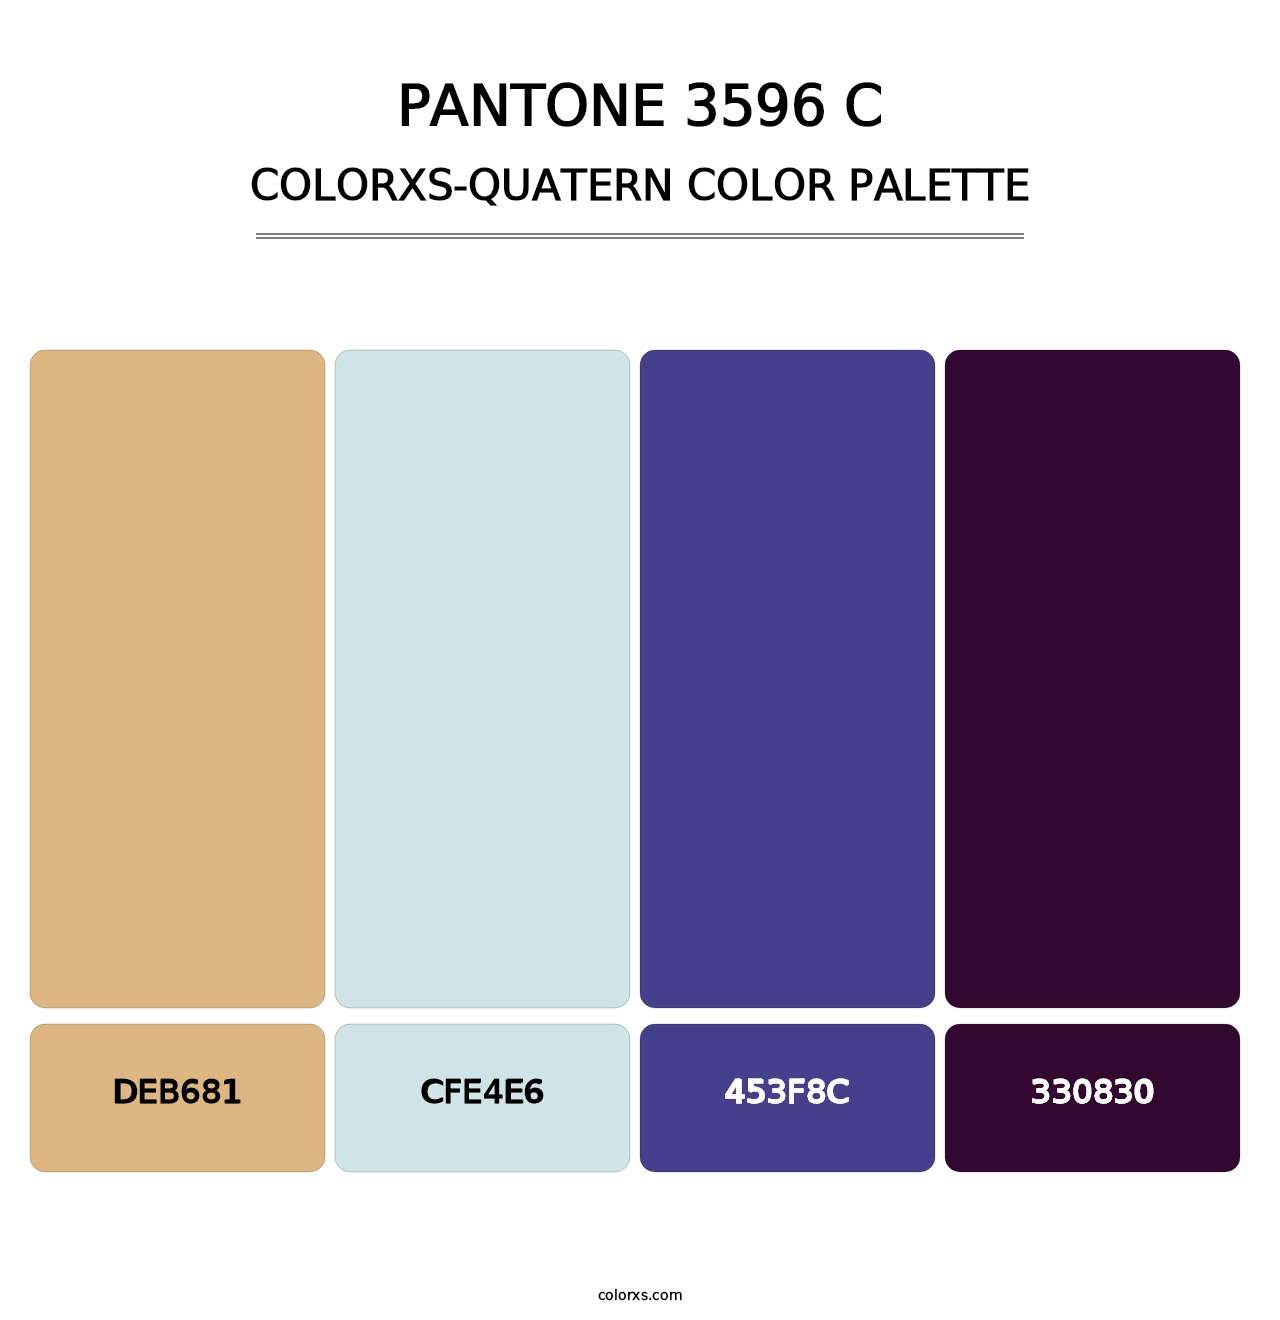 PANTONE 3596 C - Colorxs Quatern Palette